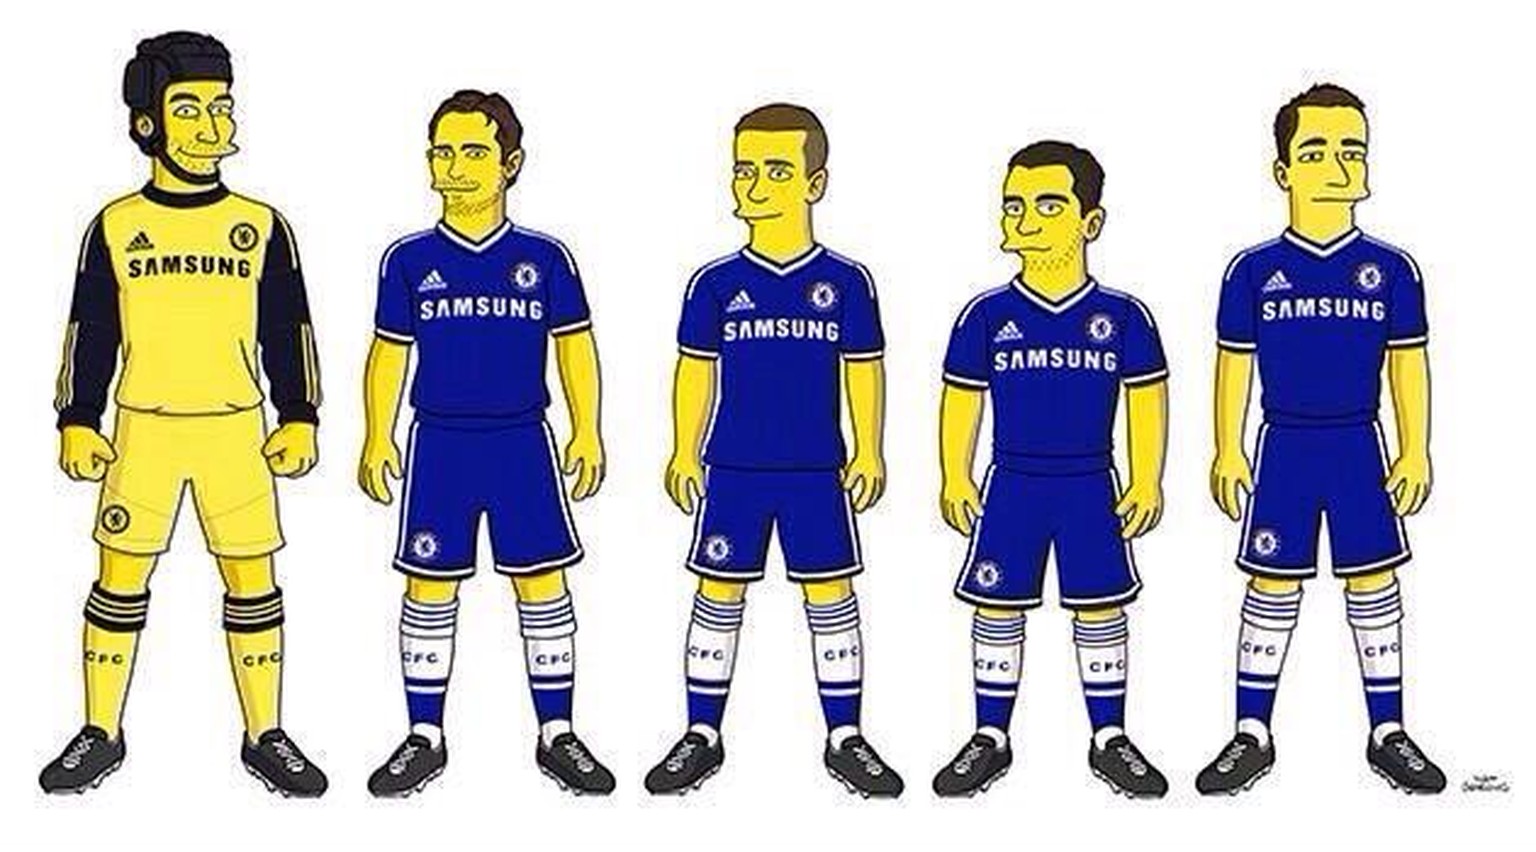 Fünf Chelsea-Spieler als Simpson-Charaktere. Wer sind sie?